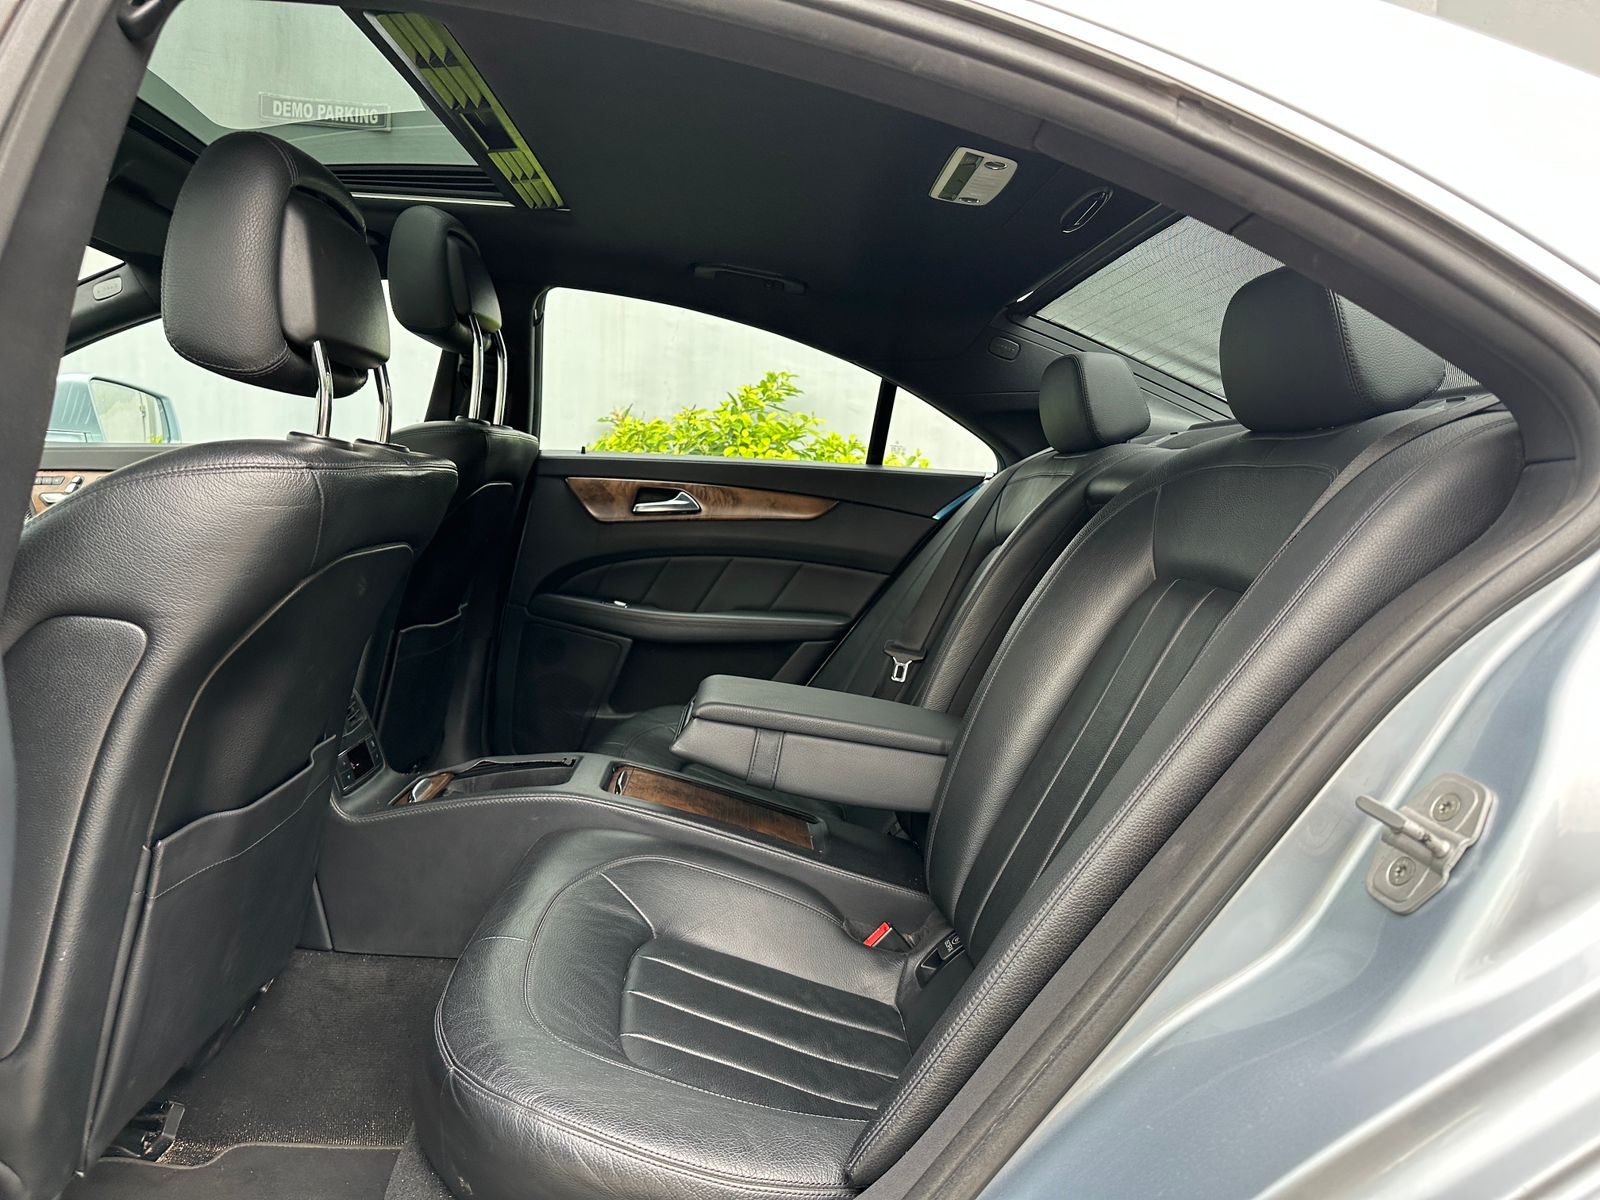 Mercedes benz CLS - 2016 model - 38261 kms back seat